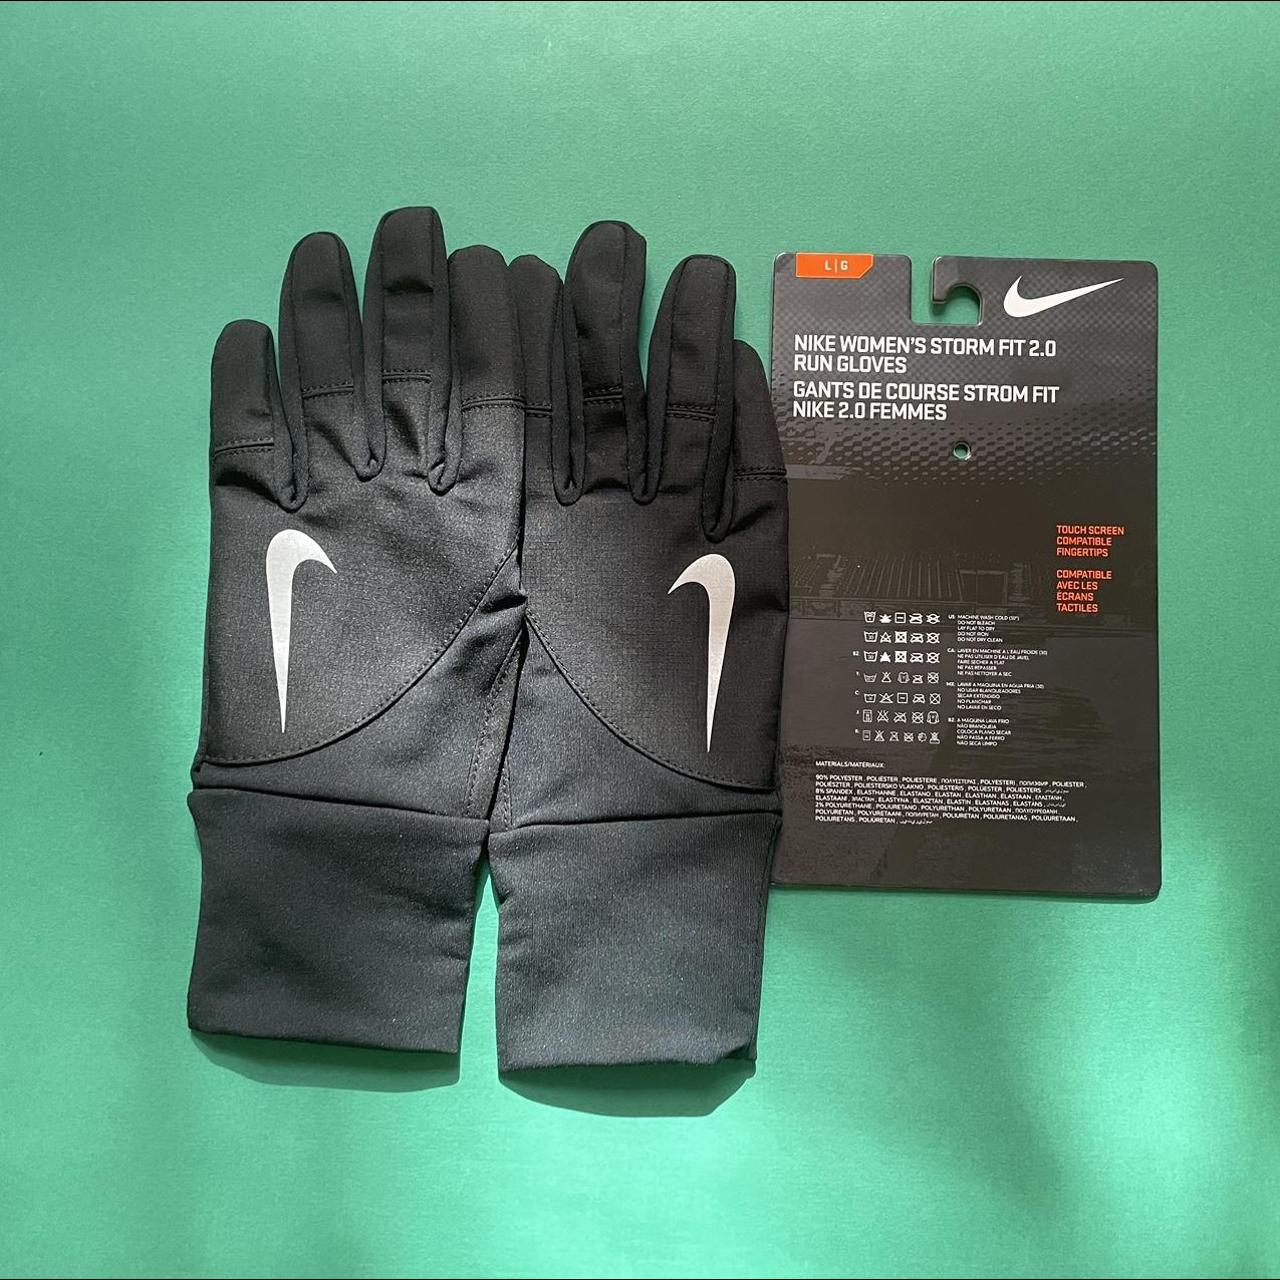 verlangen baden Haarvaten Women's Nike Storm Fit 2.0 Running Gloves Black... - Depop